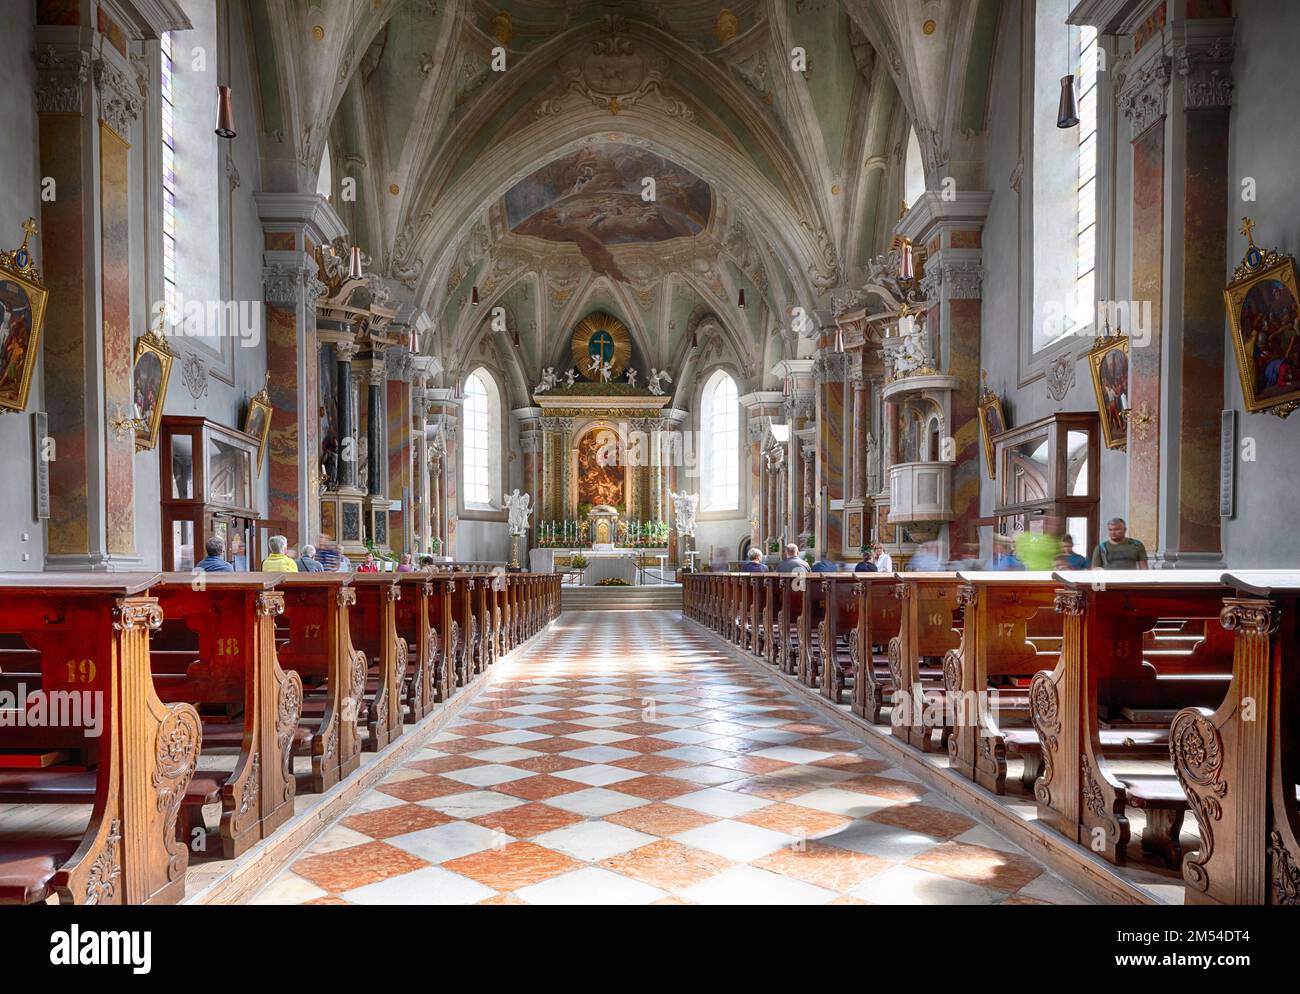 Fotografia interna della Chiesa Parrocchiale di San Michael, Bressanone, Alto Adige, Trentino, Italia Foto Stock